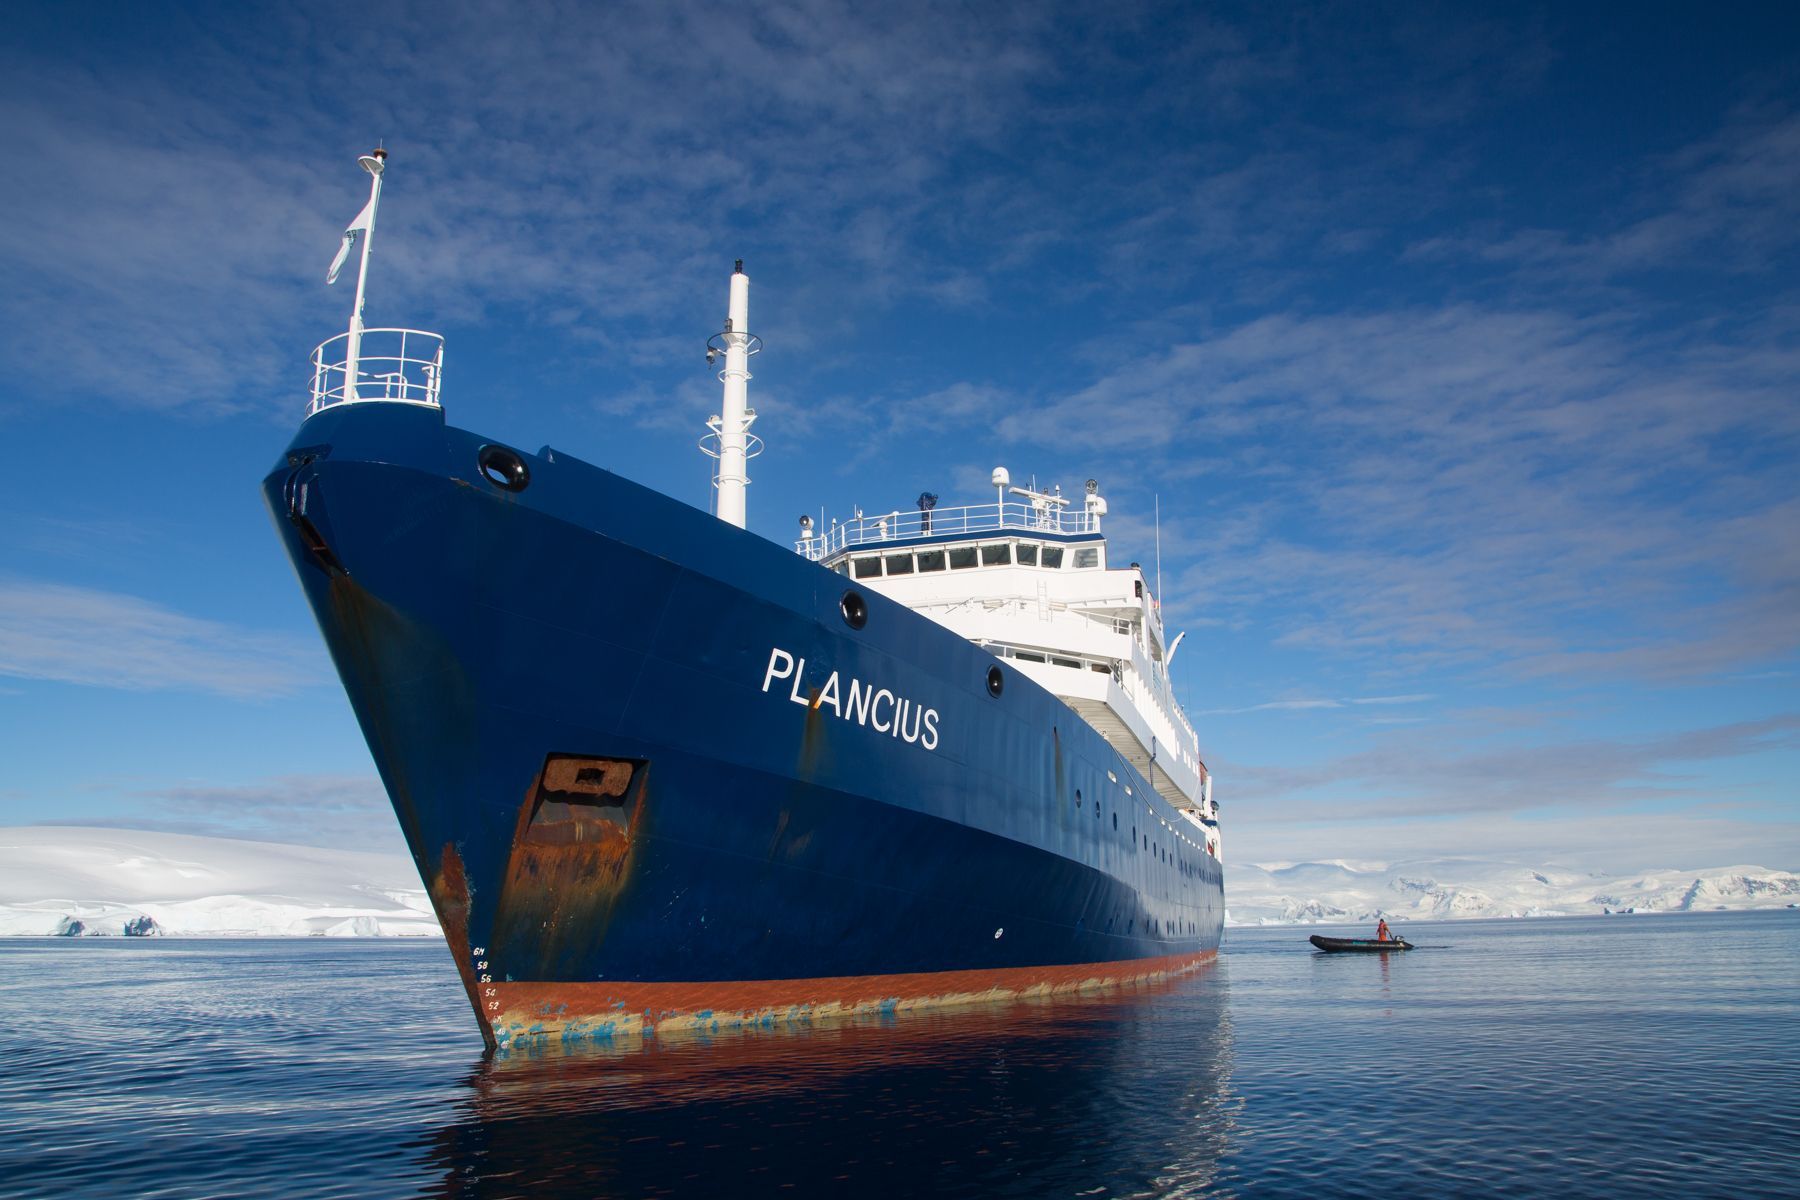 The Plancius anchored up at Neko Harbour, Antarctica